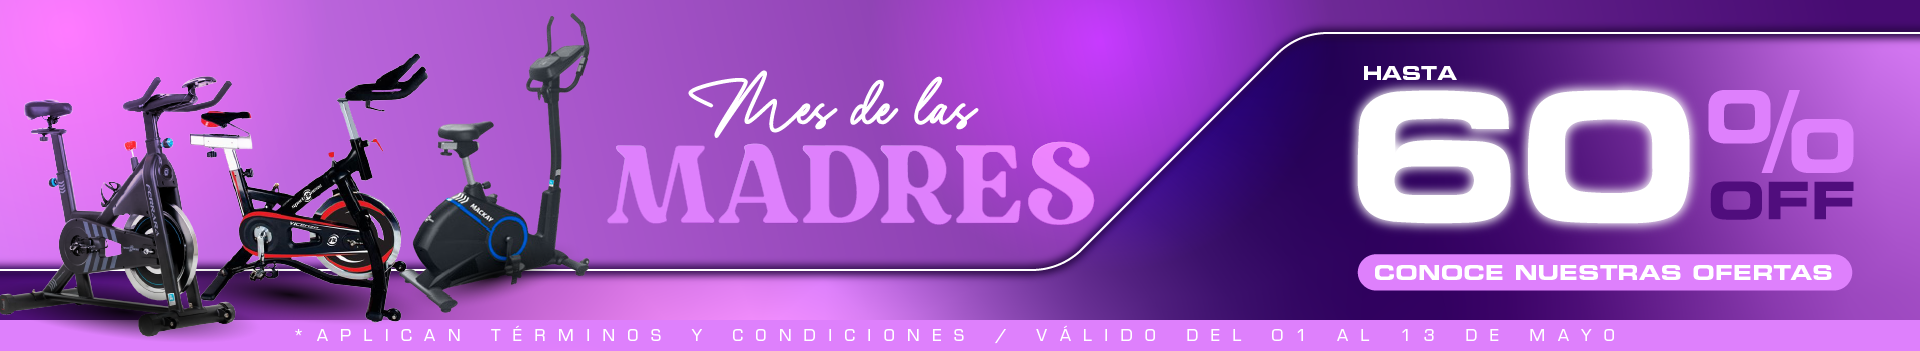 banner web dÍA DE LAS MADRES 1